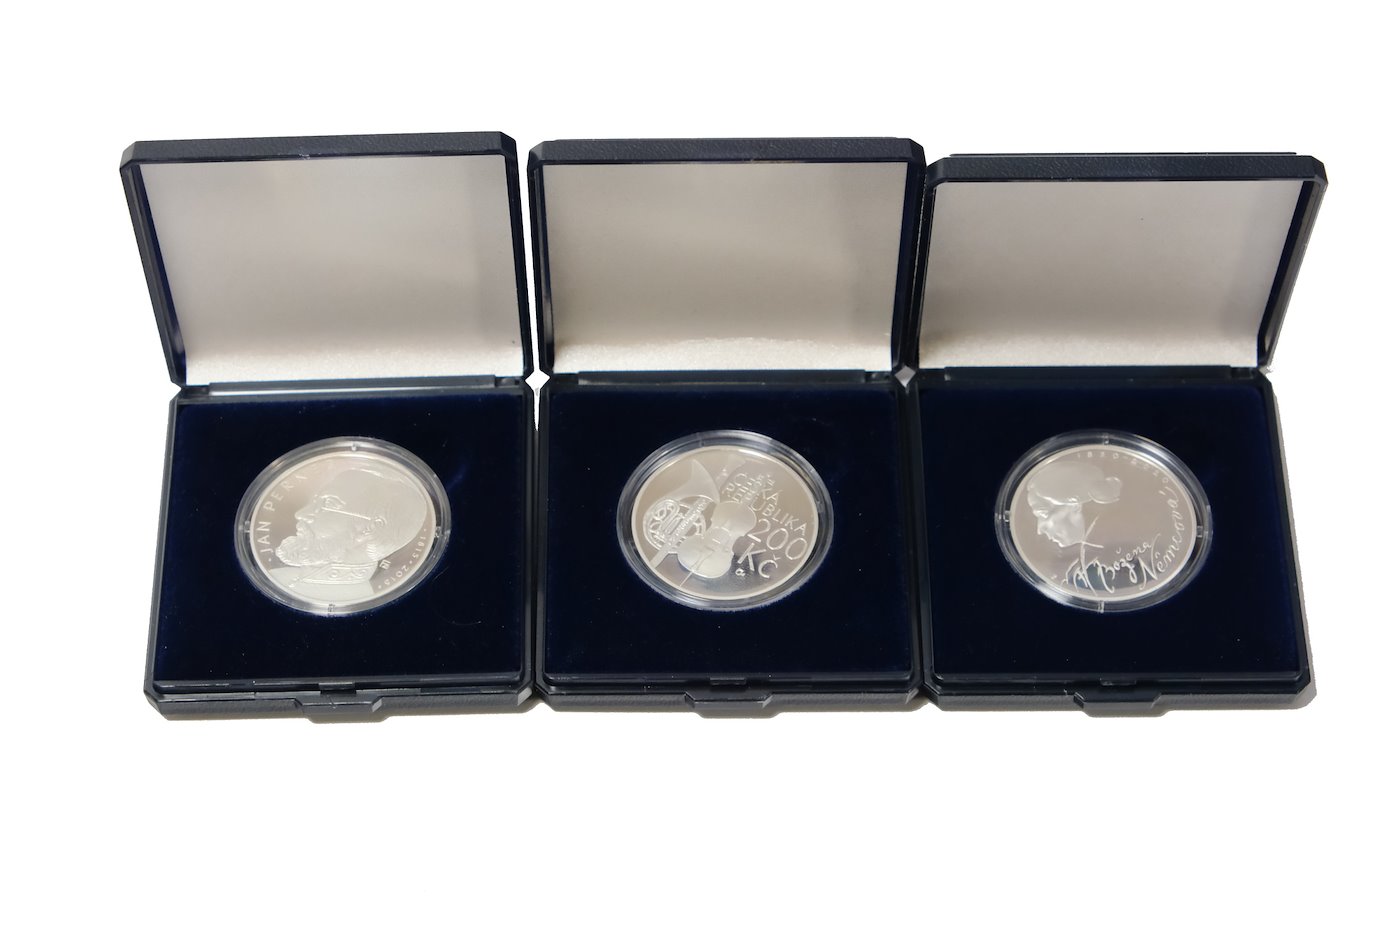 Mince - Konvolut 3 stříbrných investičních mincí v PROOF kvalitě, stříbro 3x 925/1000. Hrubá hmotnost 3x 13g